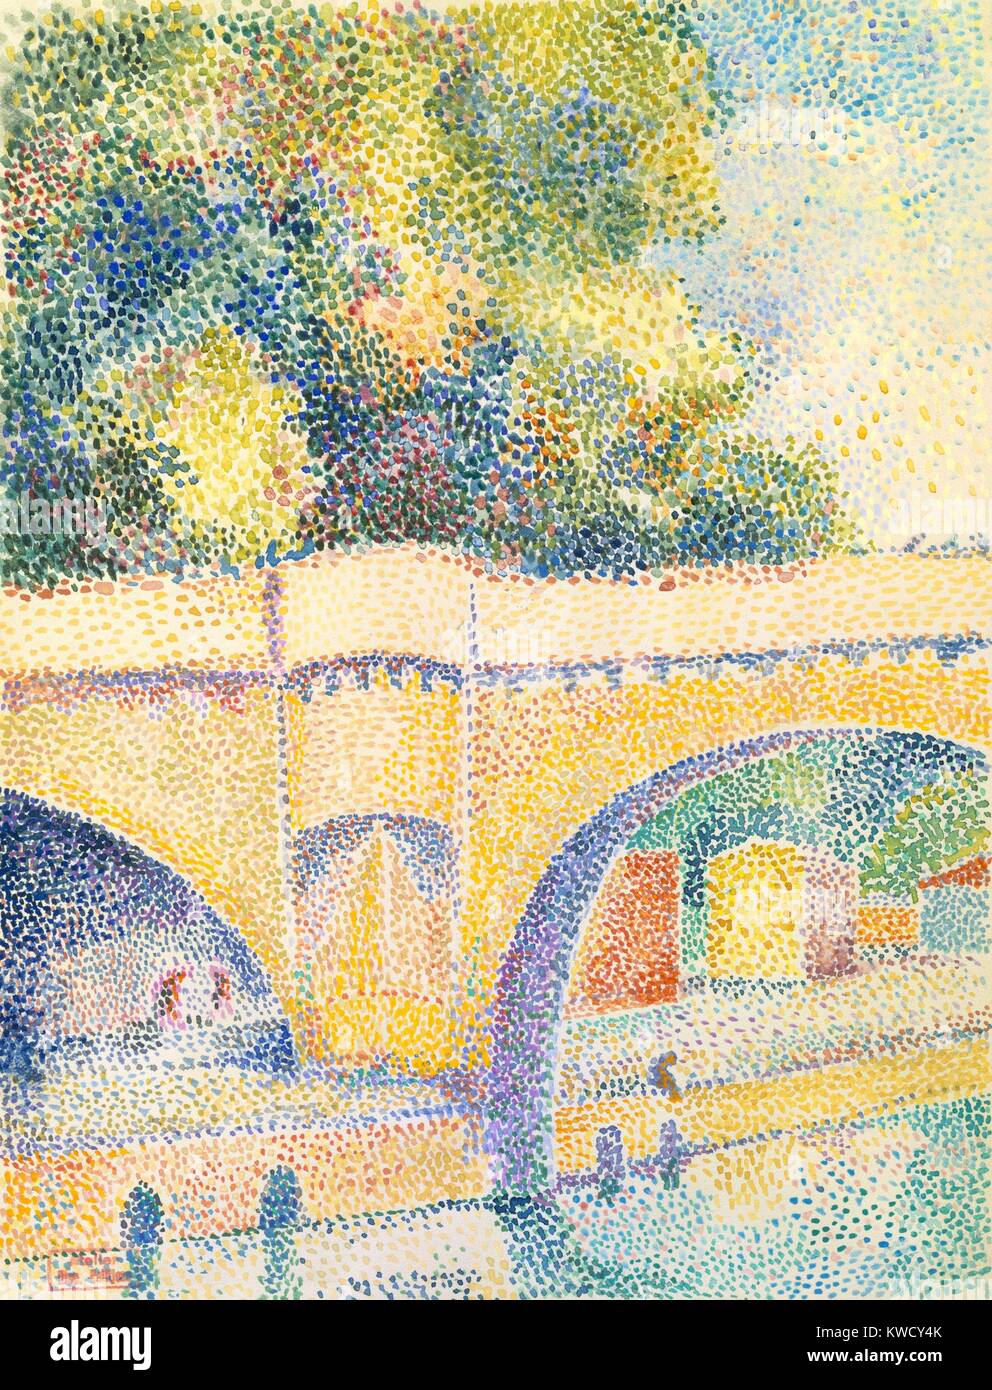 Le Pont Neuf, von Hippolyte Petitjean, 1912-14, französische Neo-Impressionist, Aquarell Malerei. Petitjean war ein enger Freund und Nachfolger von Georges Seurats. Er schuf dieses pointillistischen Arbeiten an der Seine entlang, auf der Suche flussabwärts durch die Bögen der Pont (BSLOC 2017 5 110) Stockfoto